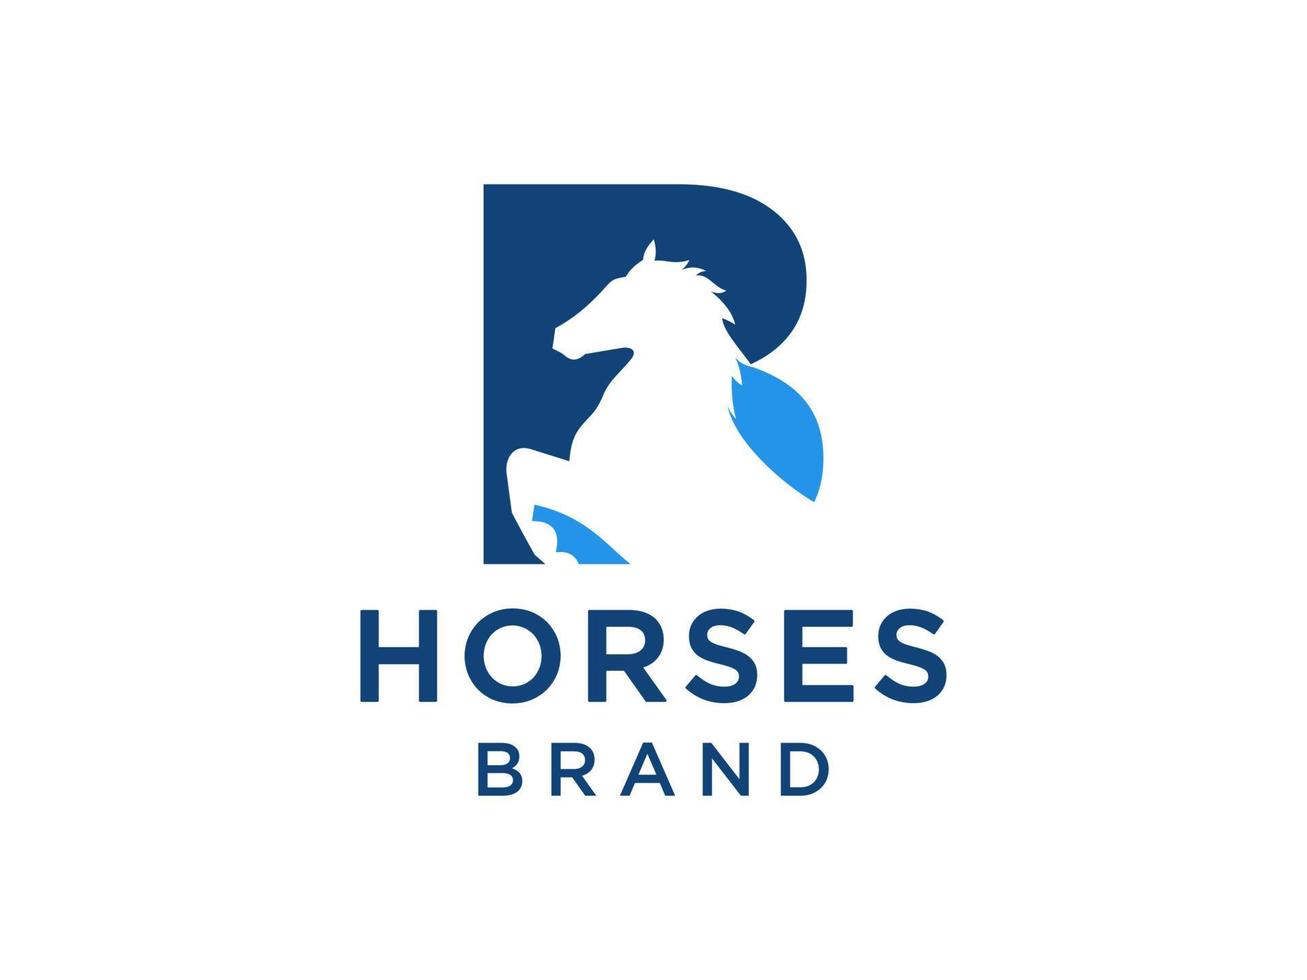 il design del logo con la lettera iniziale b è abbinato a un simbolo di testa di cavallo moderno e professionale vettore